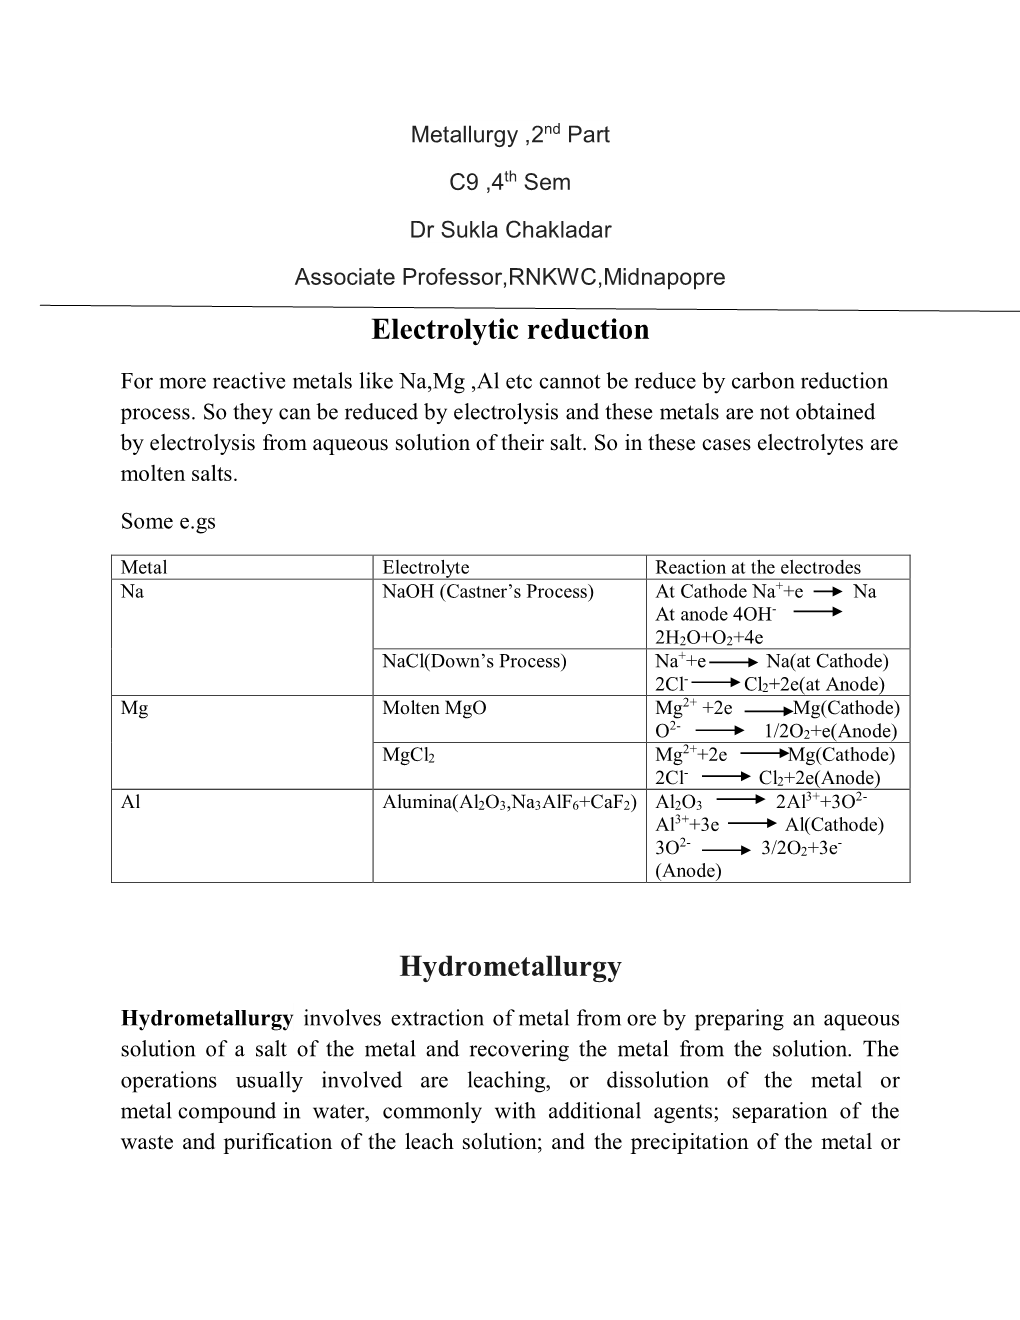 Electrolytic Reduction Hydrometallurgy